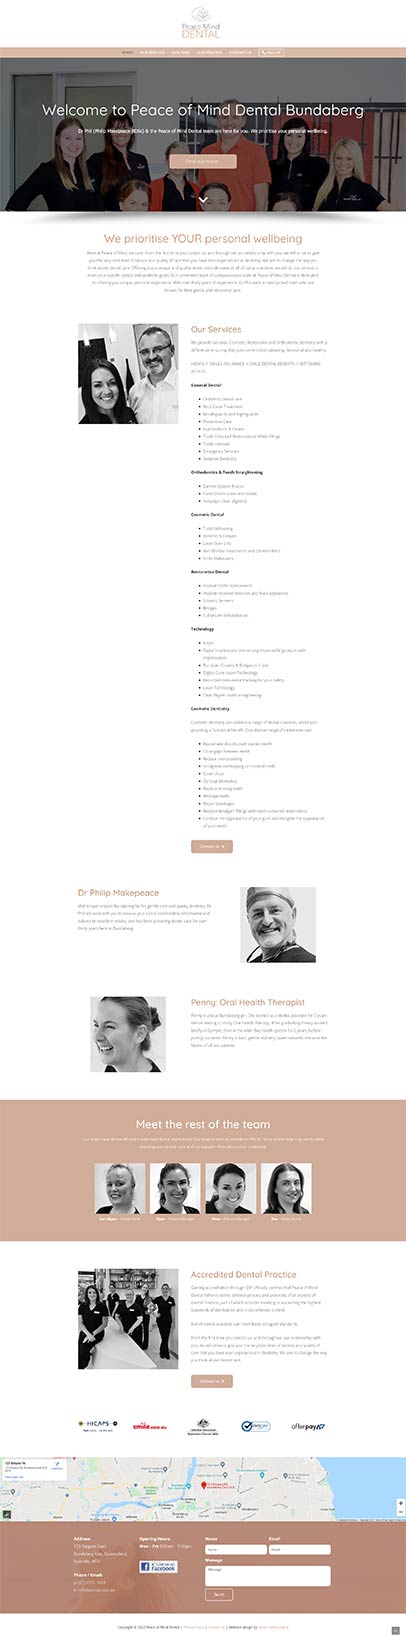 Peace of Mind Dental Bundaberg - website design